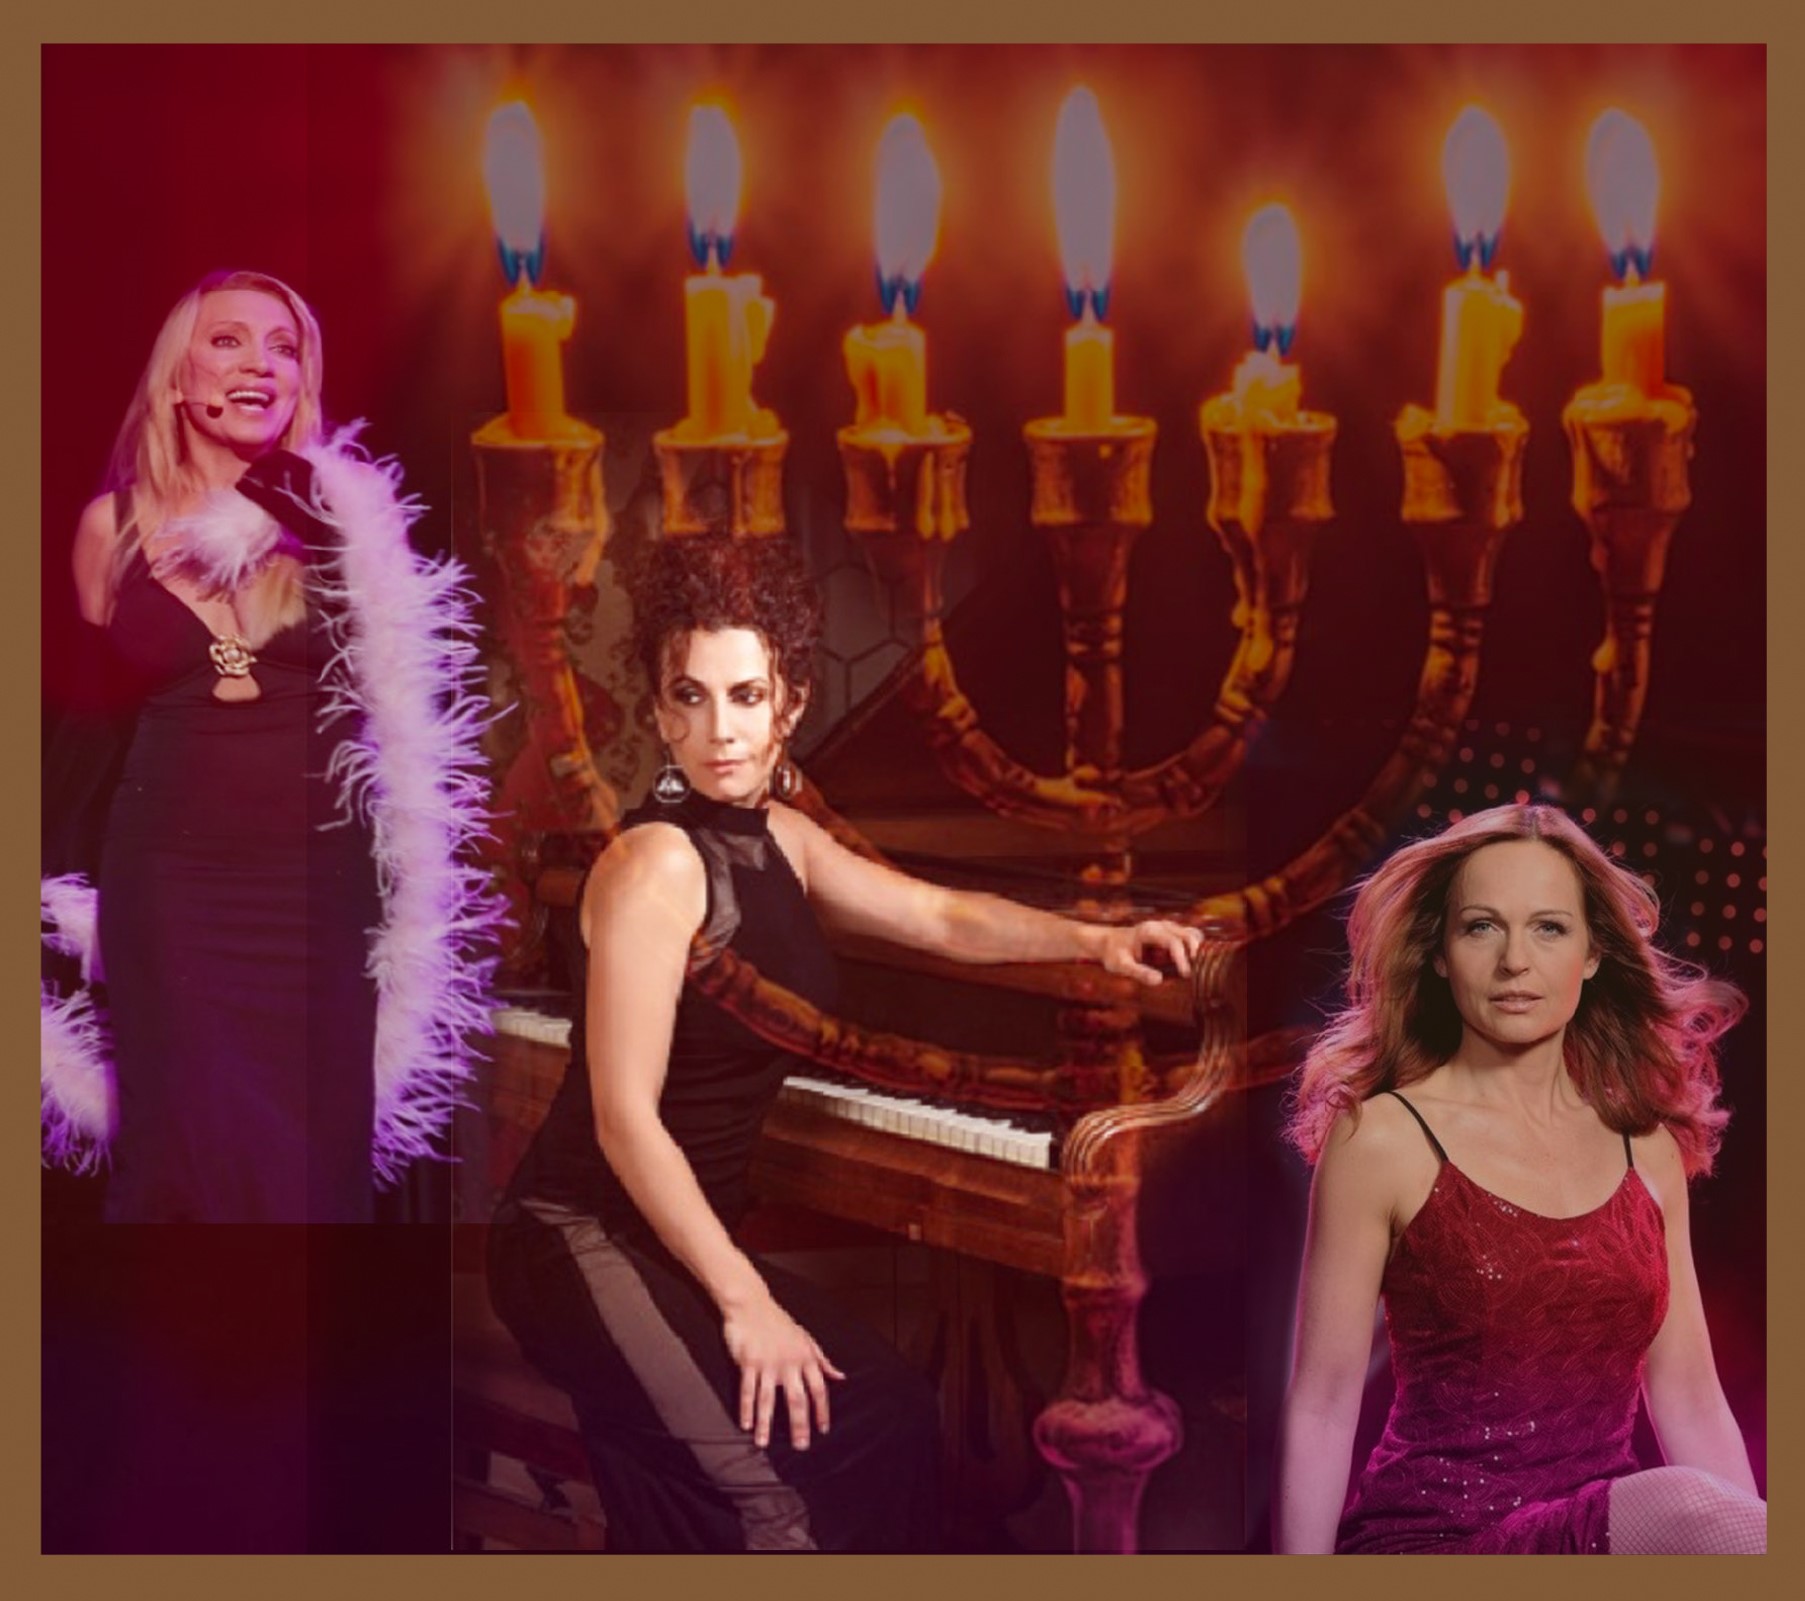 Eine Fotocollage, links eine Dame im Abendkleid mit Federboa, in der Mitte eine Dame am Klavier, rechts Porträt einer weiteren Dame. Im Hintergrund sieht man einen siebenarmigen jüdischen Kerzenleuchter.